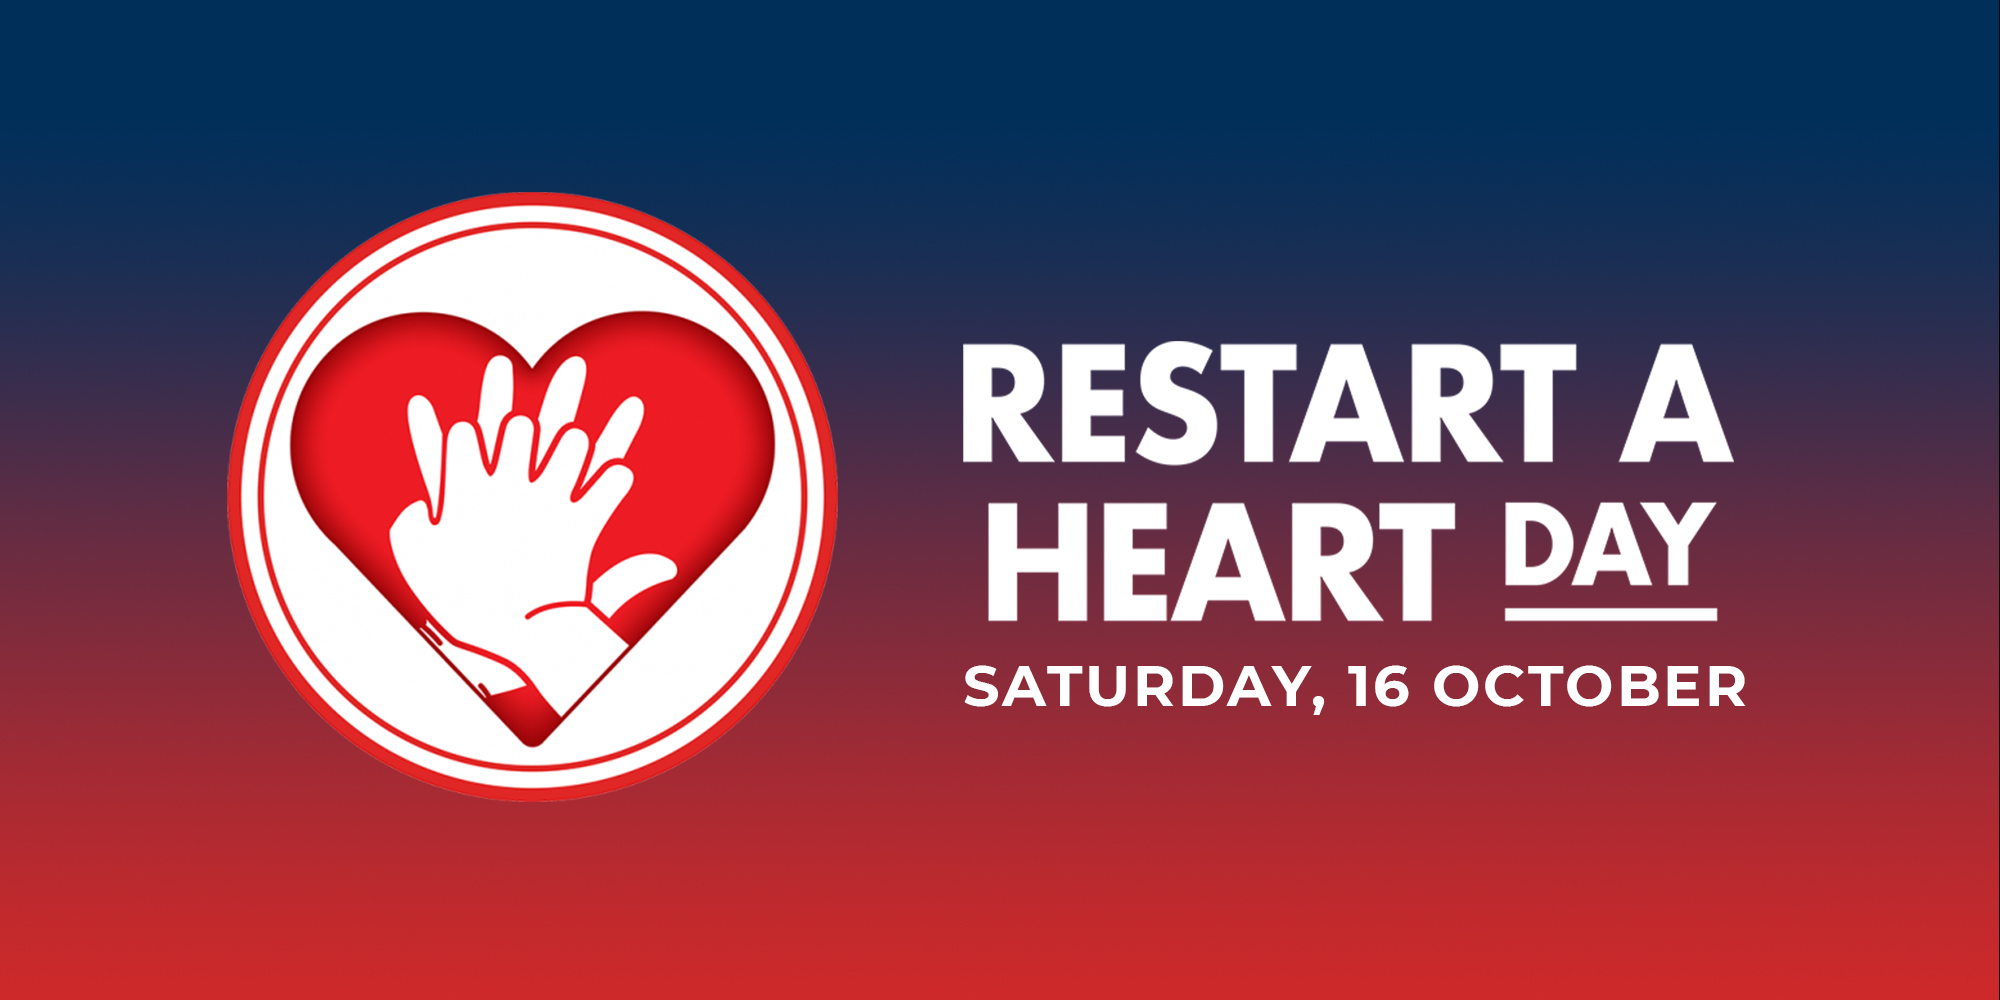 Restart a Heart Day header image showing start date